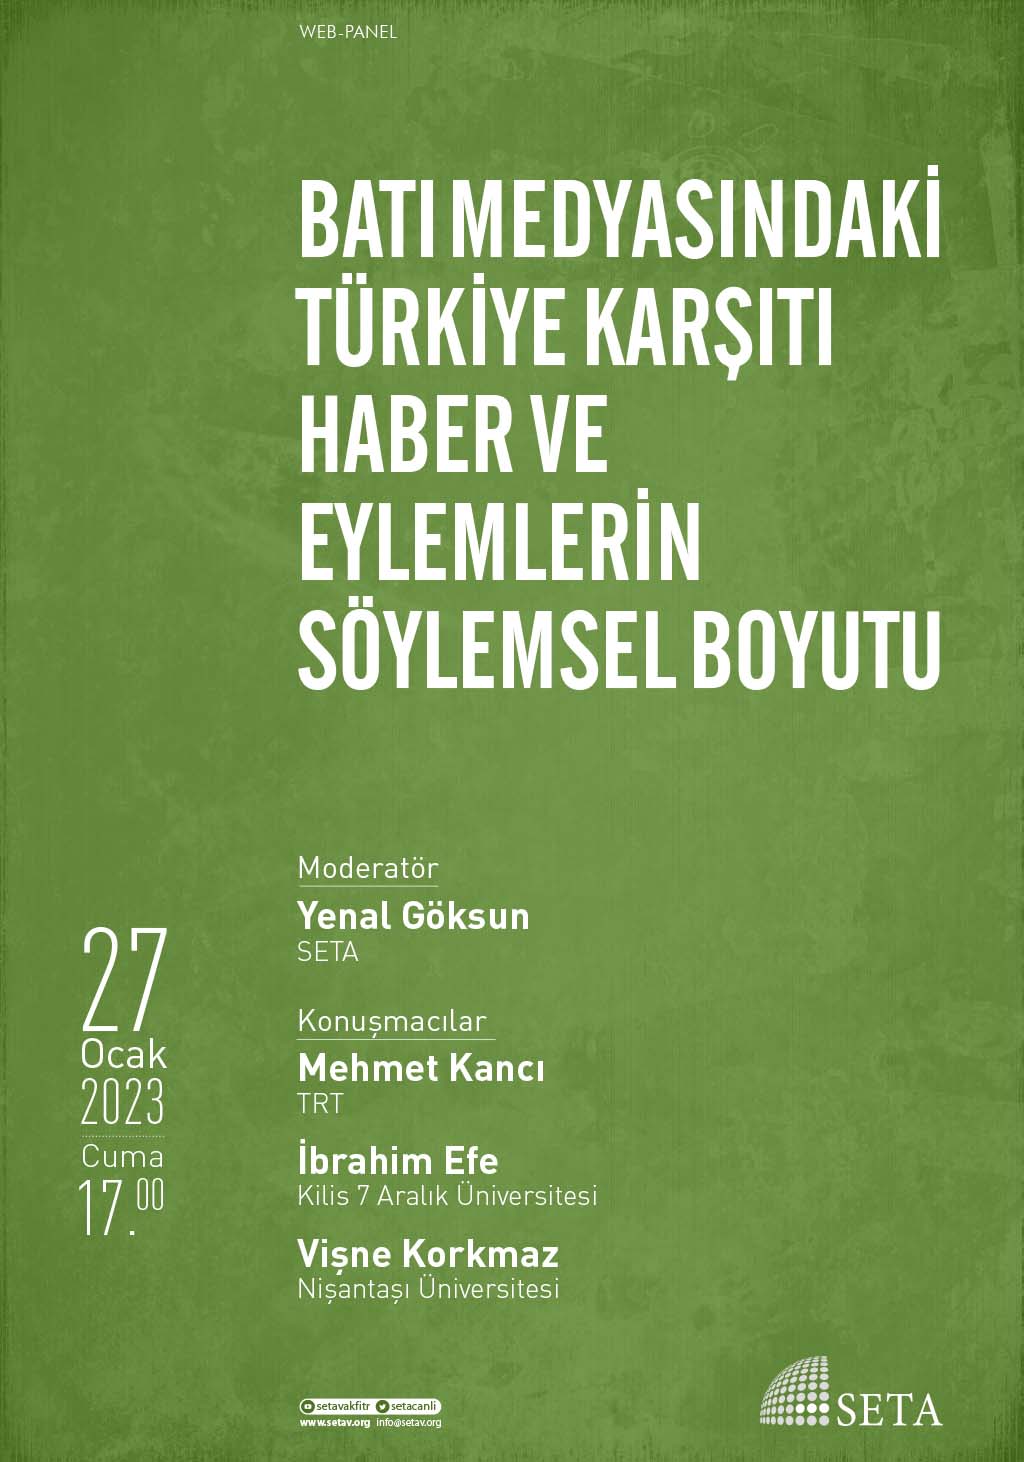 Web Panel: Batı Medyasındaki Türkiye Karşıtı Haber ve Eylemlerin Söylemsel Boyutu